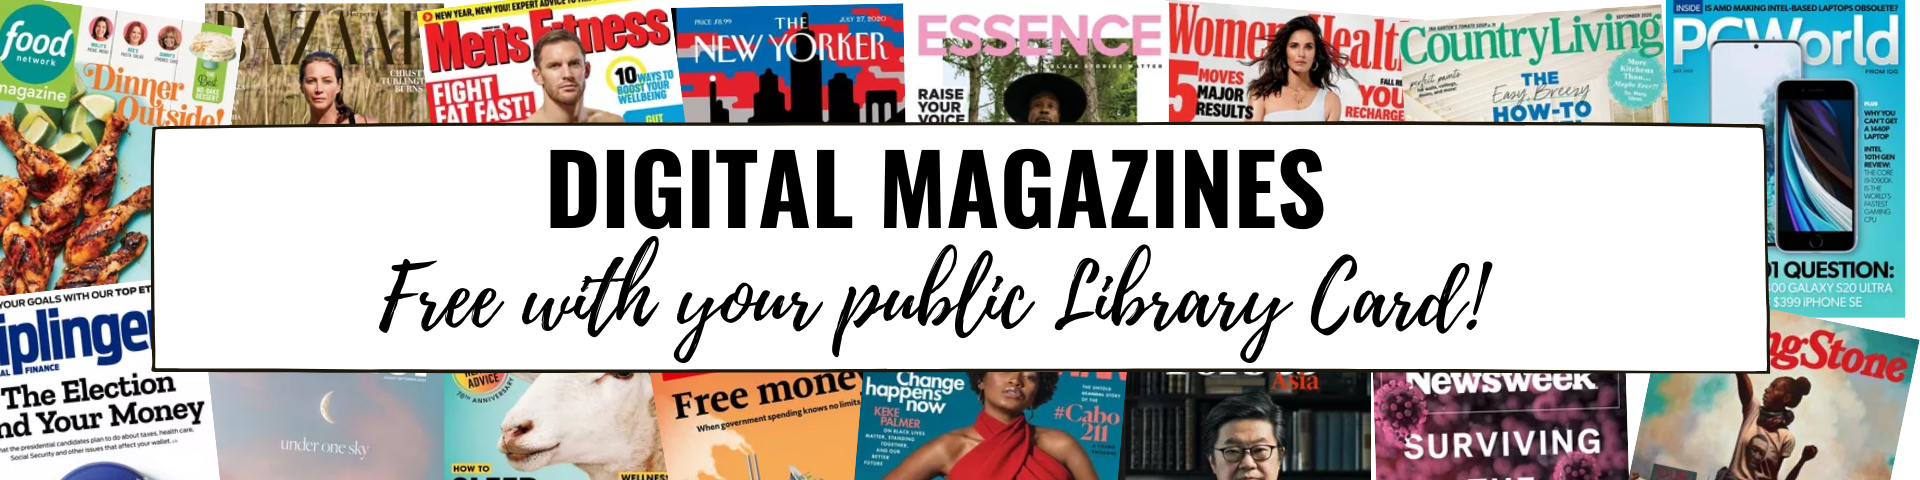 Digital Magazines Header